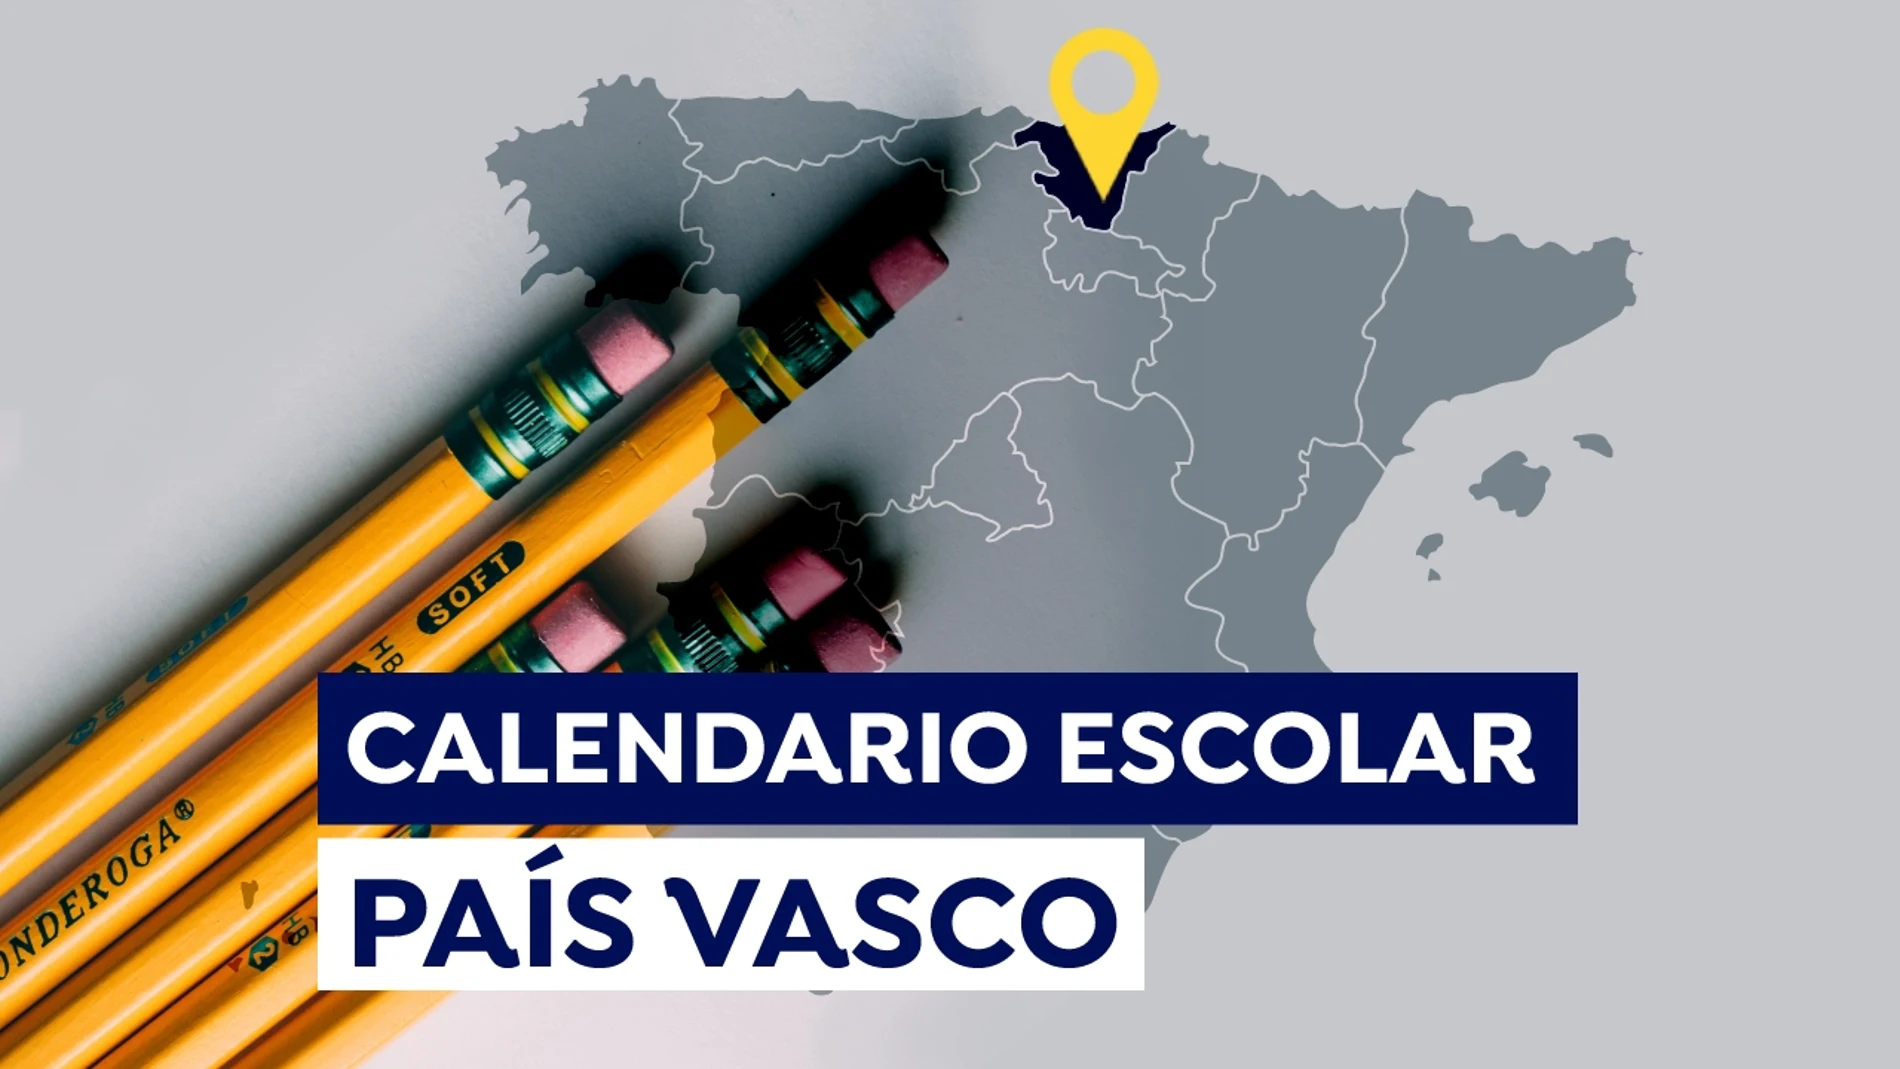 Calendario escolar País Vasco 2021-2022: Fechas de inicio de las clases, días lectivos y vacaciones